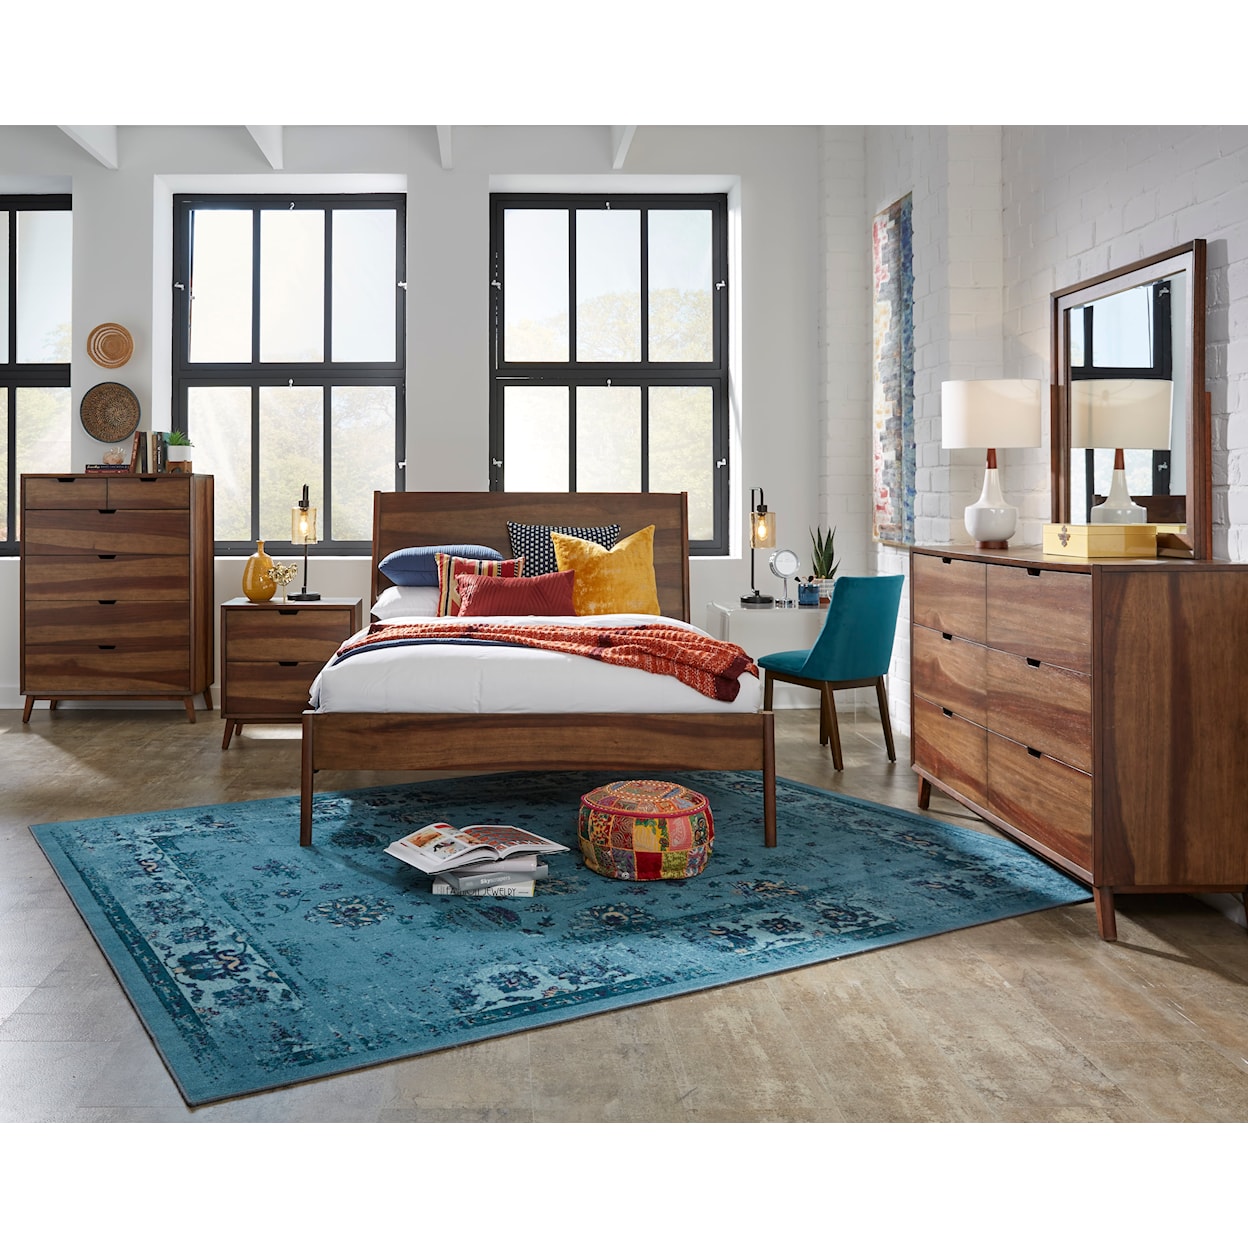 Progressive Furniture Bungalow 5-Piece King Bedroom Set